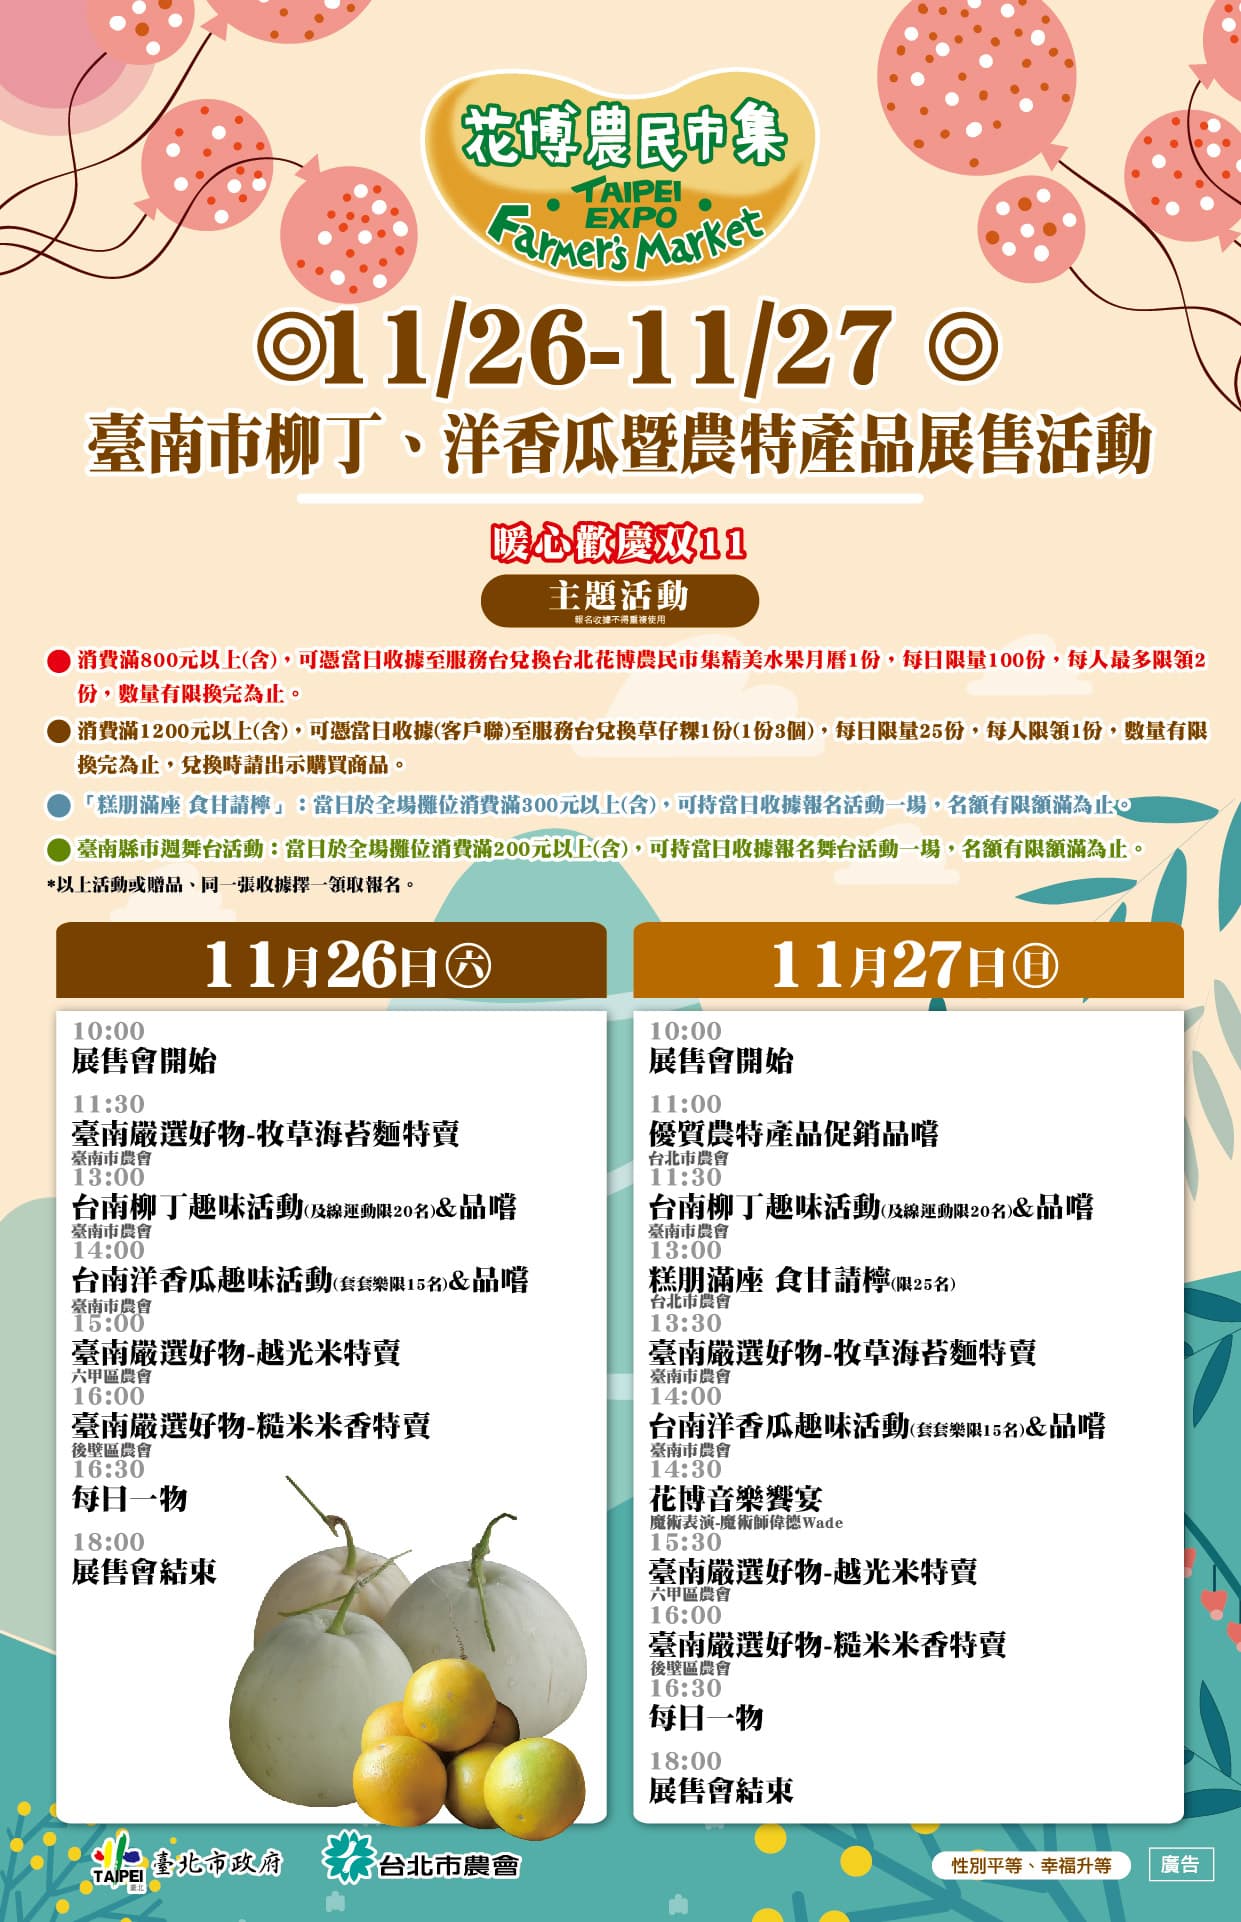 11/26-11/27 臺南市柳丁、洋香瓜暨農特產品展售活動流程表